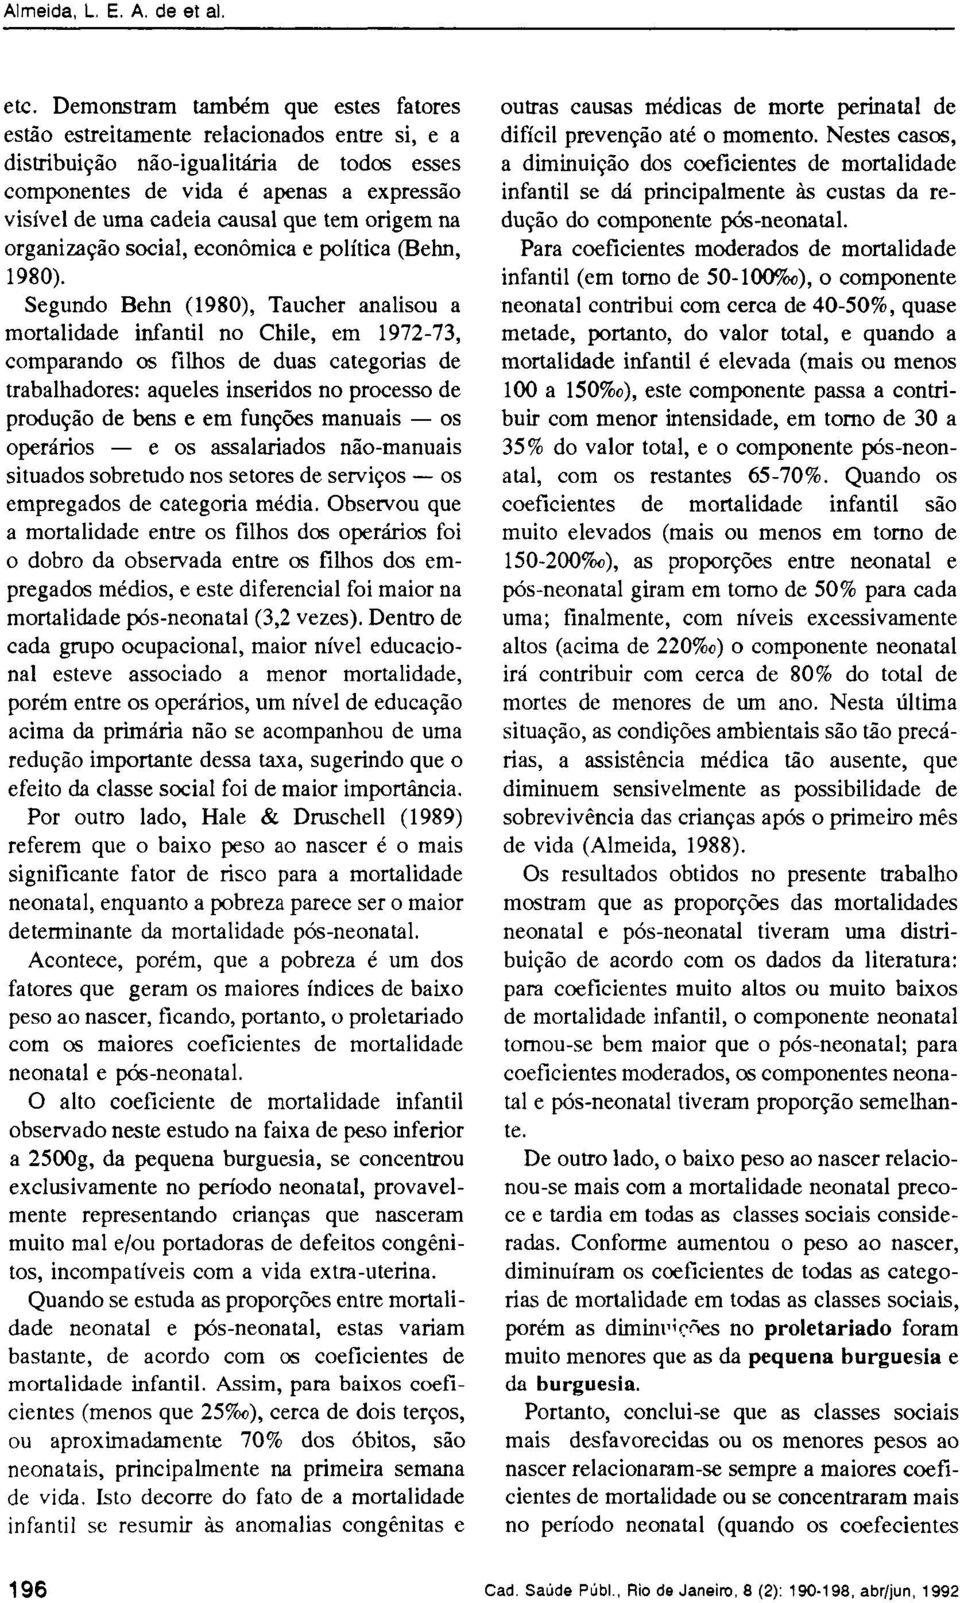 Segundo Behn (1980), Taucher analisou a mortalidade infantil no Chile, em 1972-73, comparando os filhos de duas categorias de trabalhadores: aqueles inseridos no processo de produção de bens e em